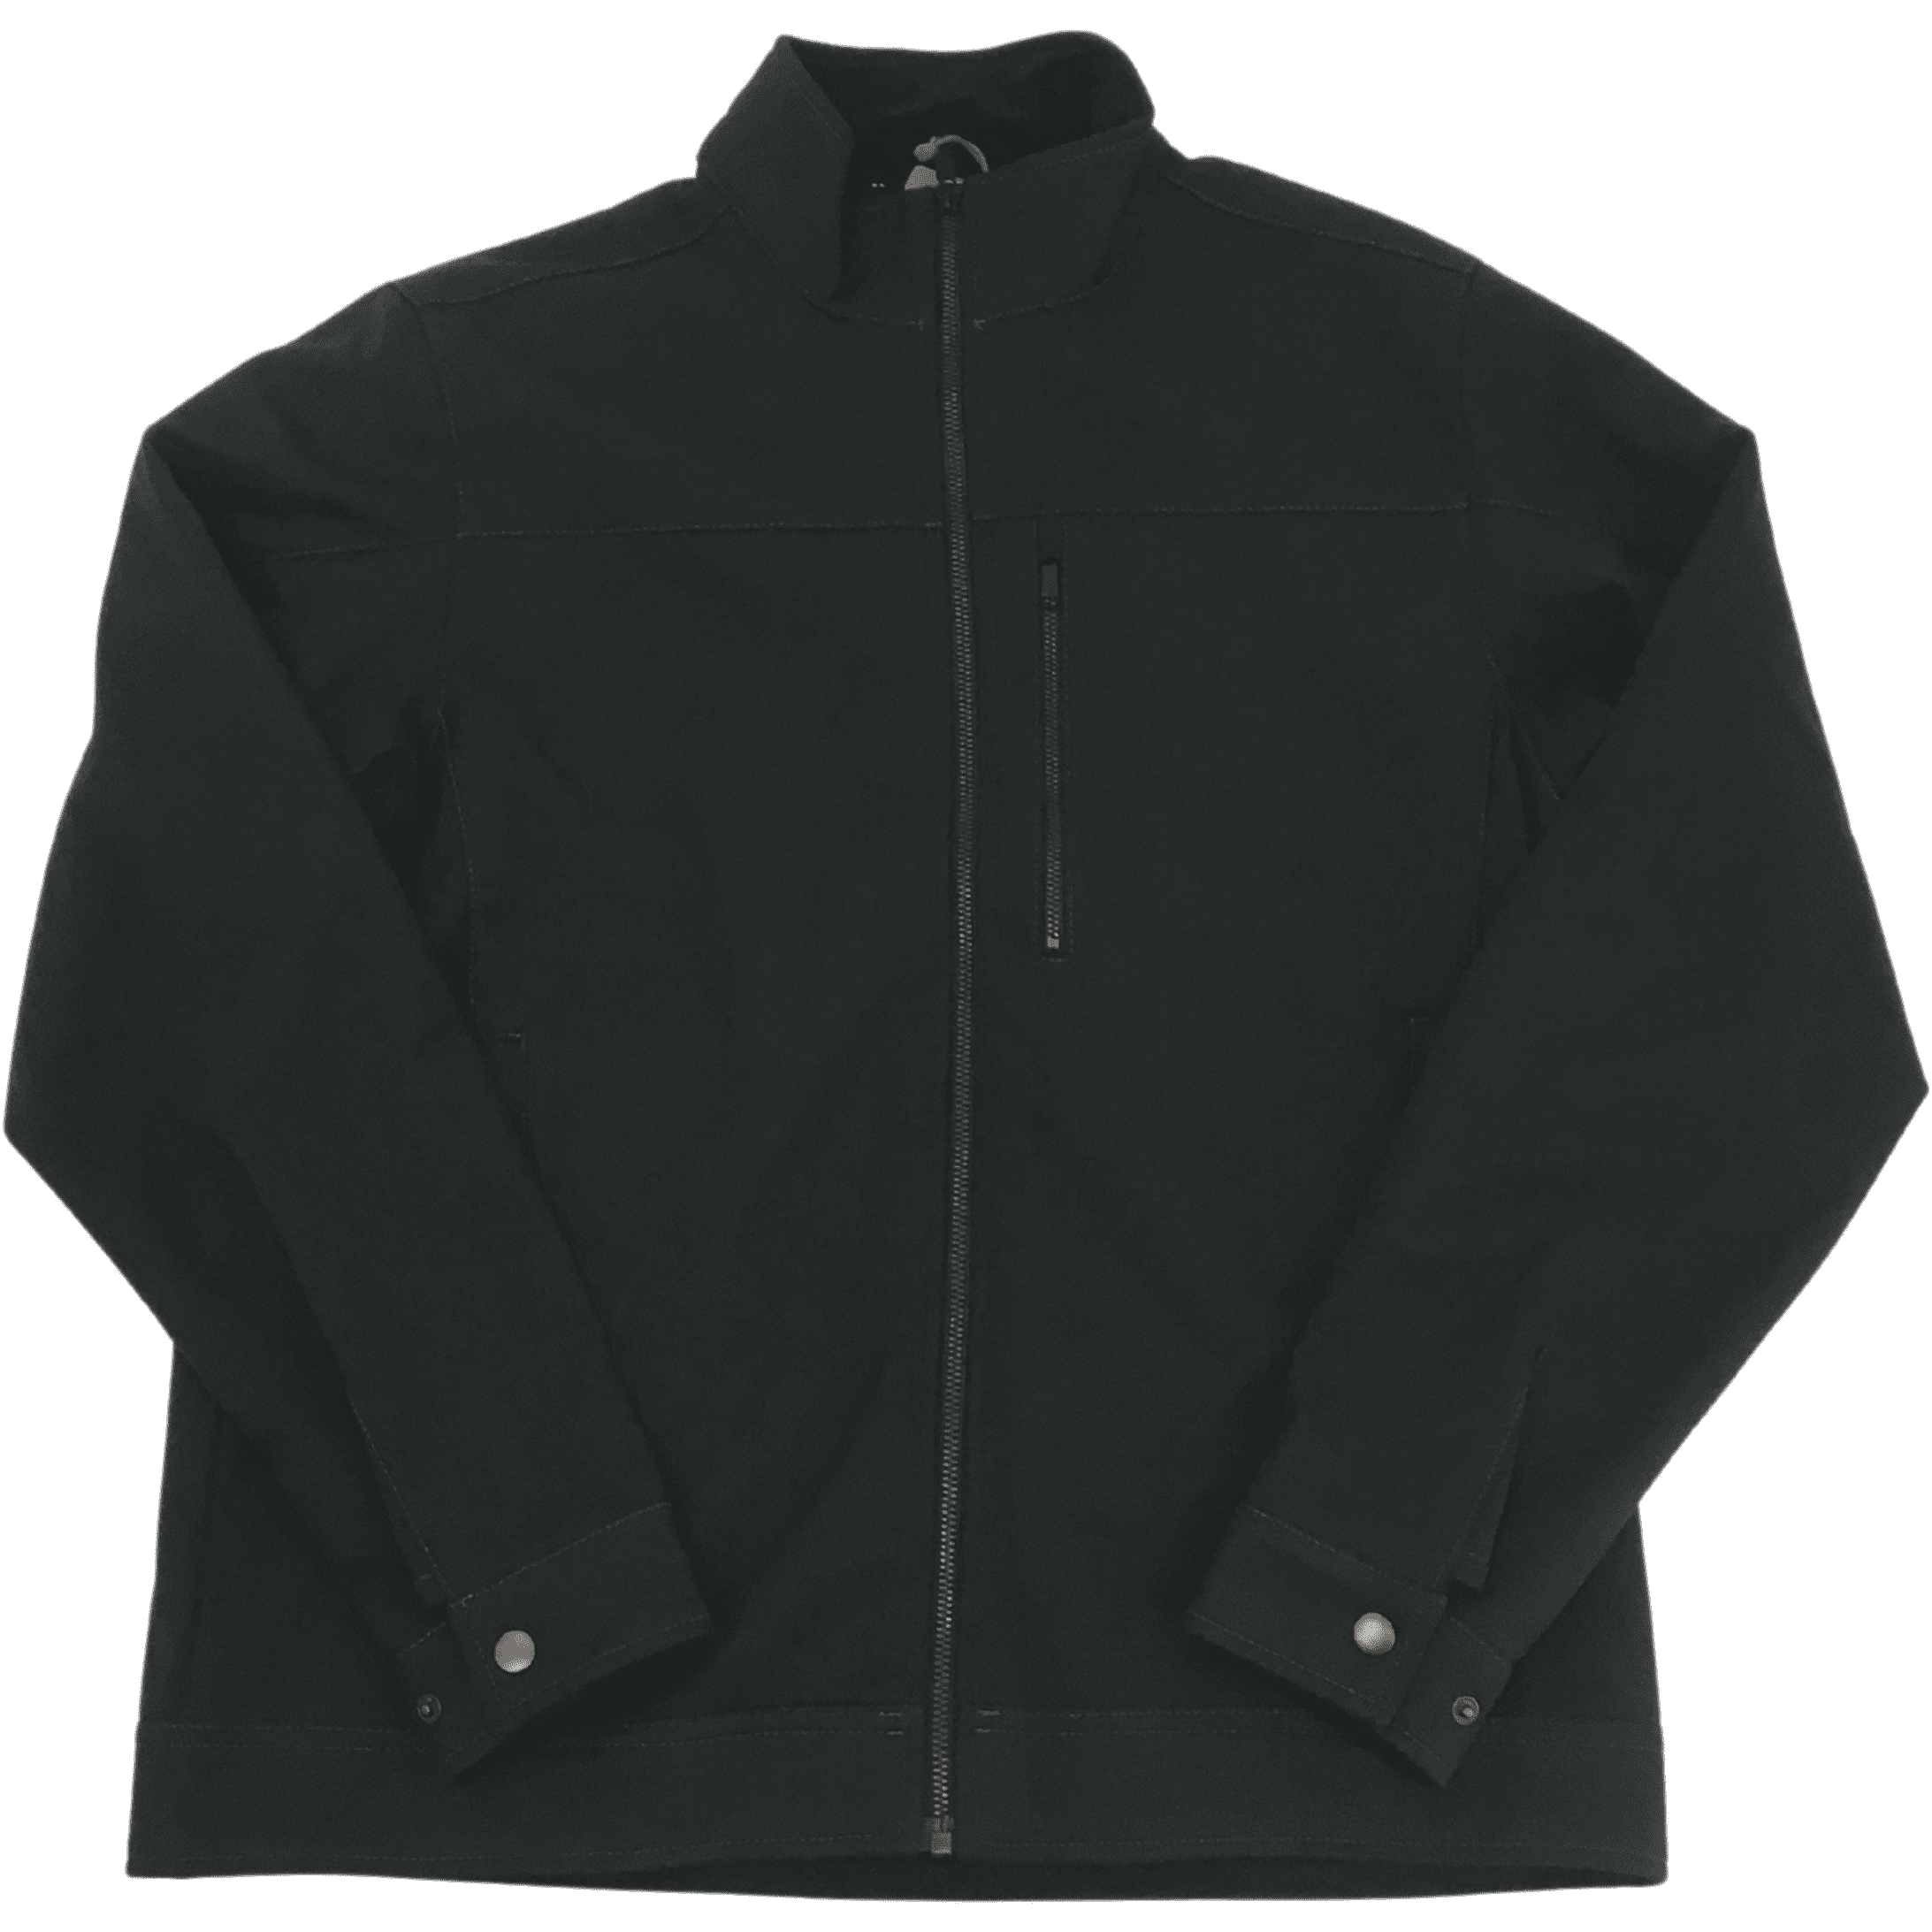 Kirkland / Men's Soft Shell Jacket / Medium / Black